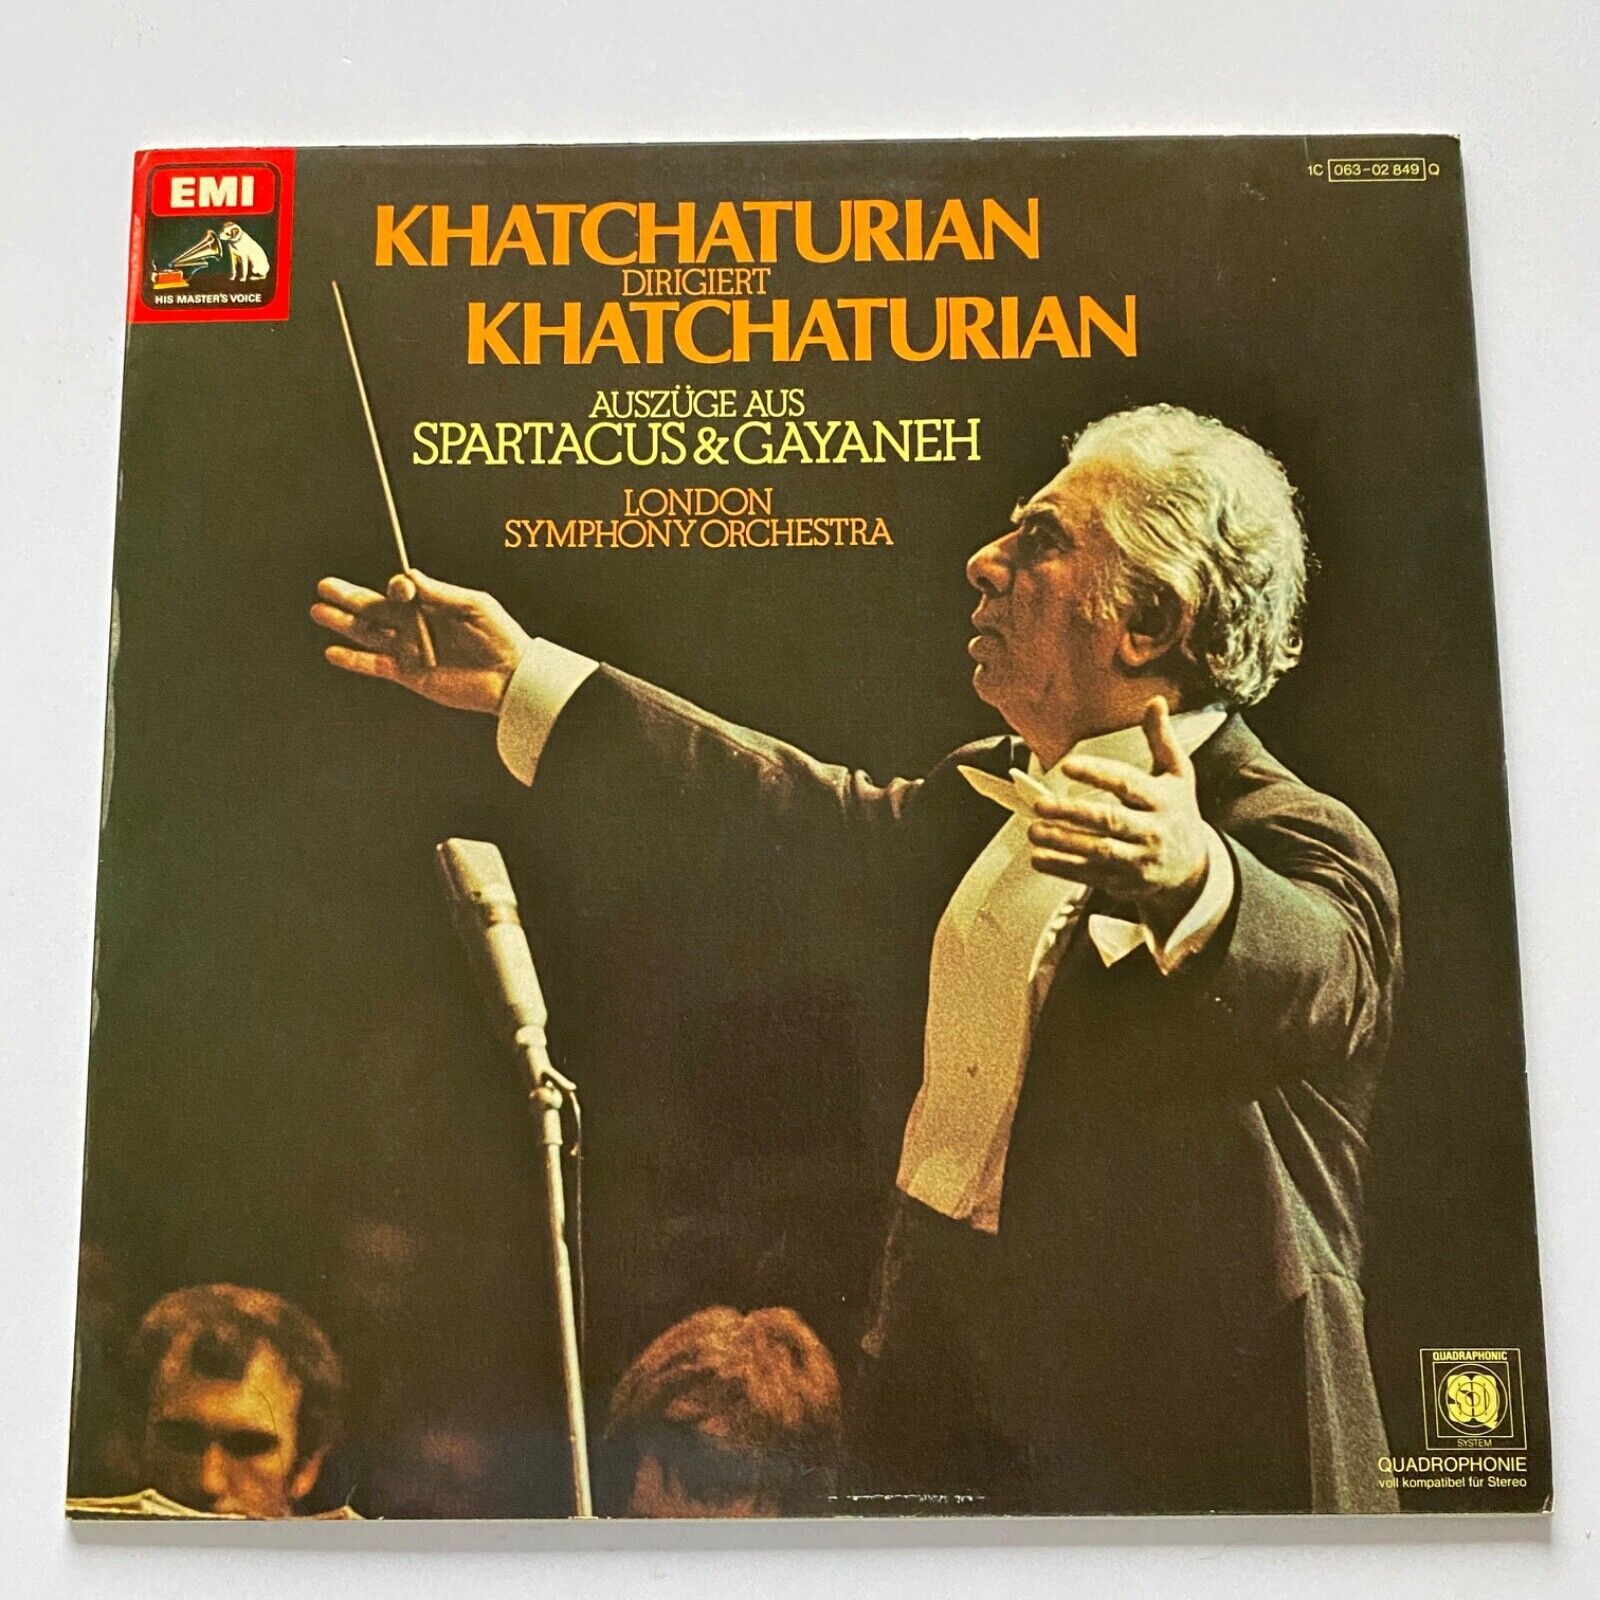 Spartacus & Gayaneh Ballet Suite Khachaturian/LSO LP Vinyl HMV Quadraphonic